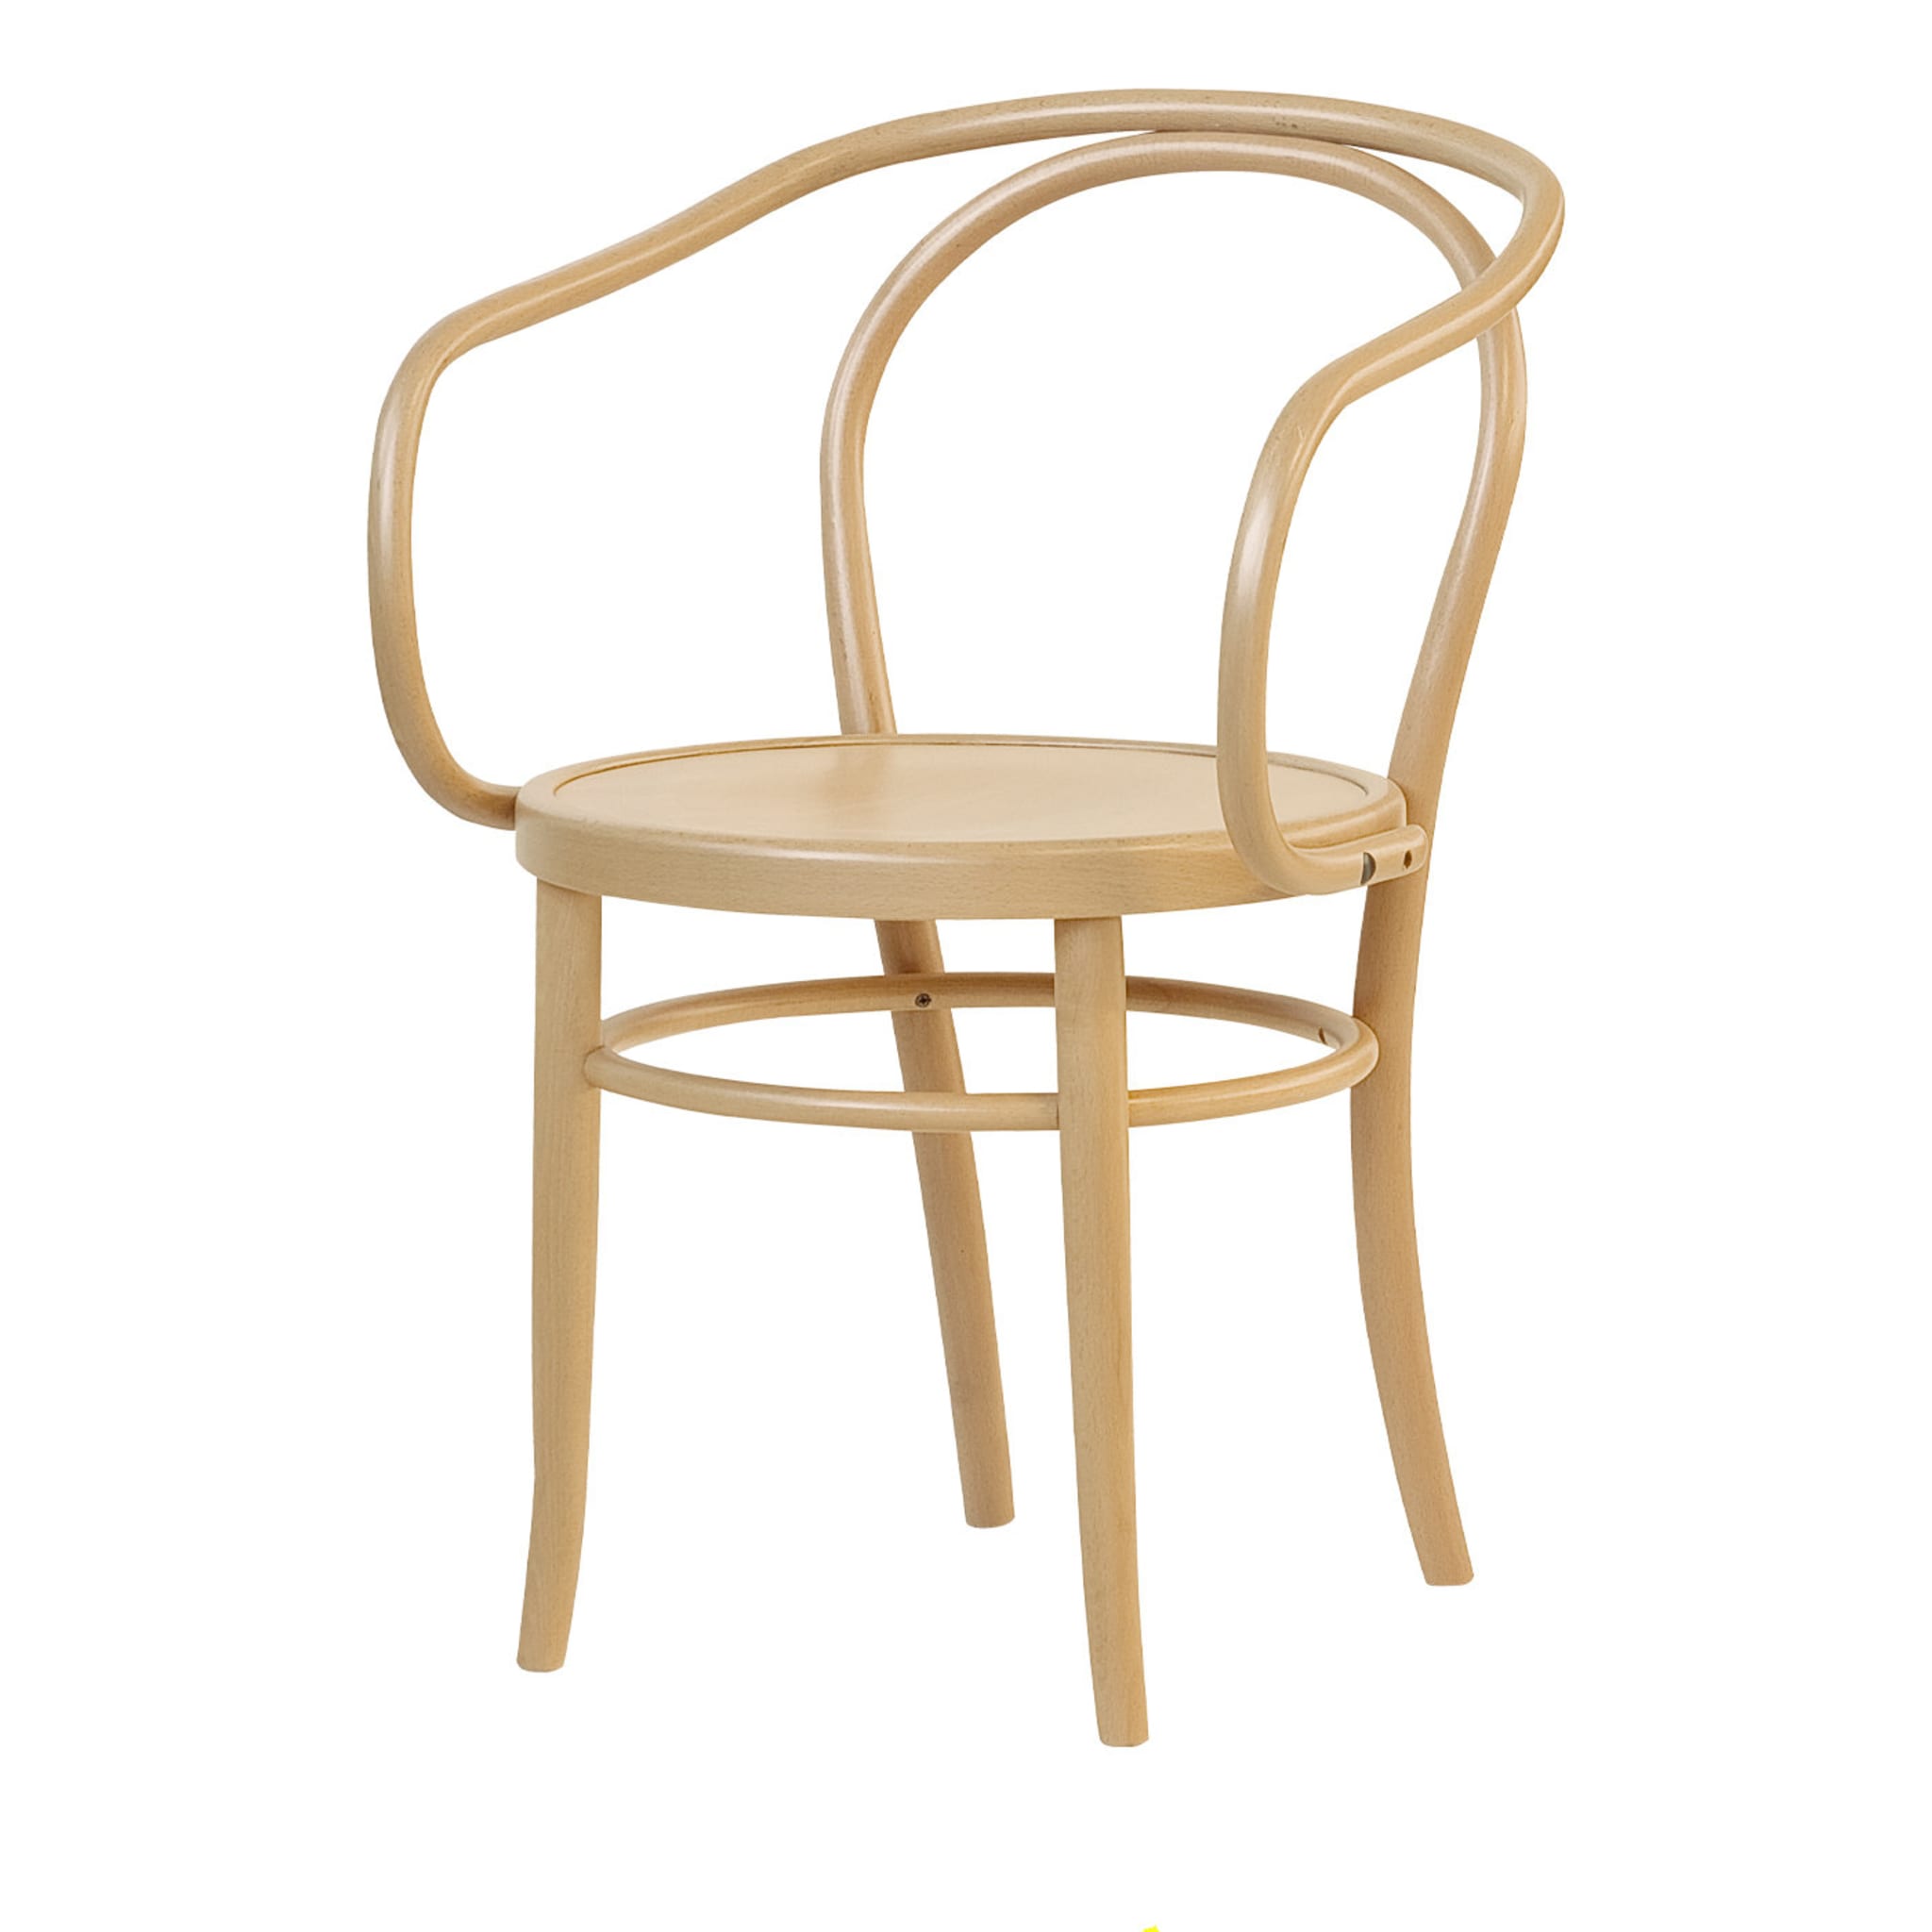 08 Beigefarbener Stuhl mit Armlehnen - Hauptansicht